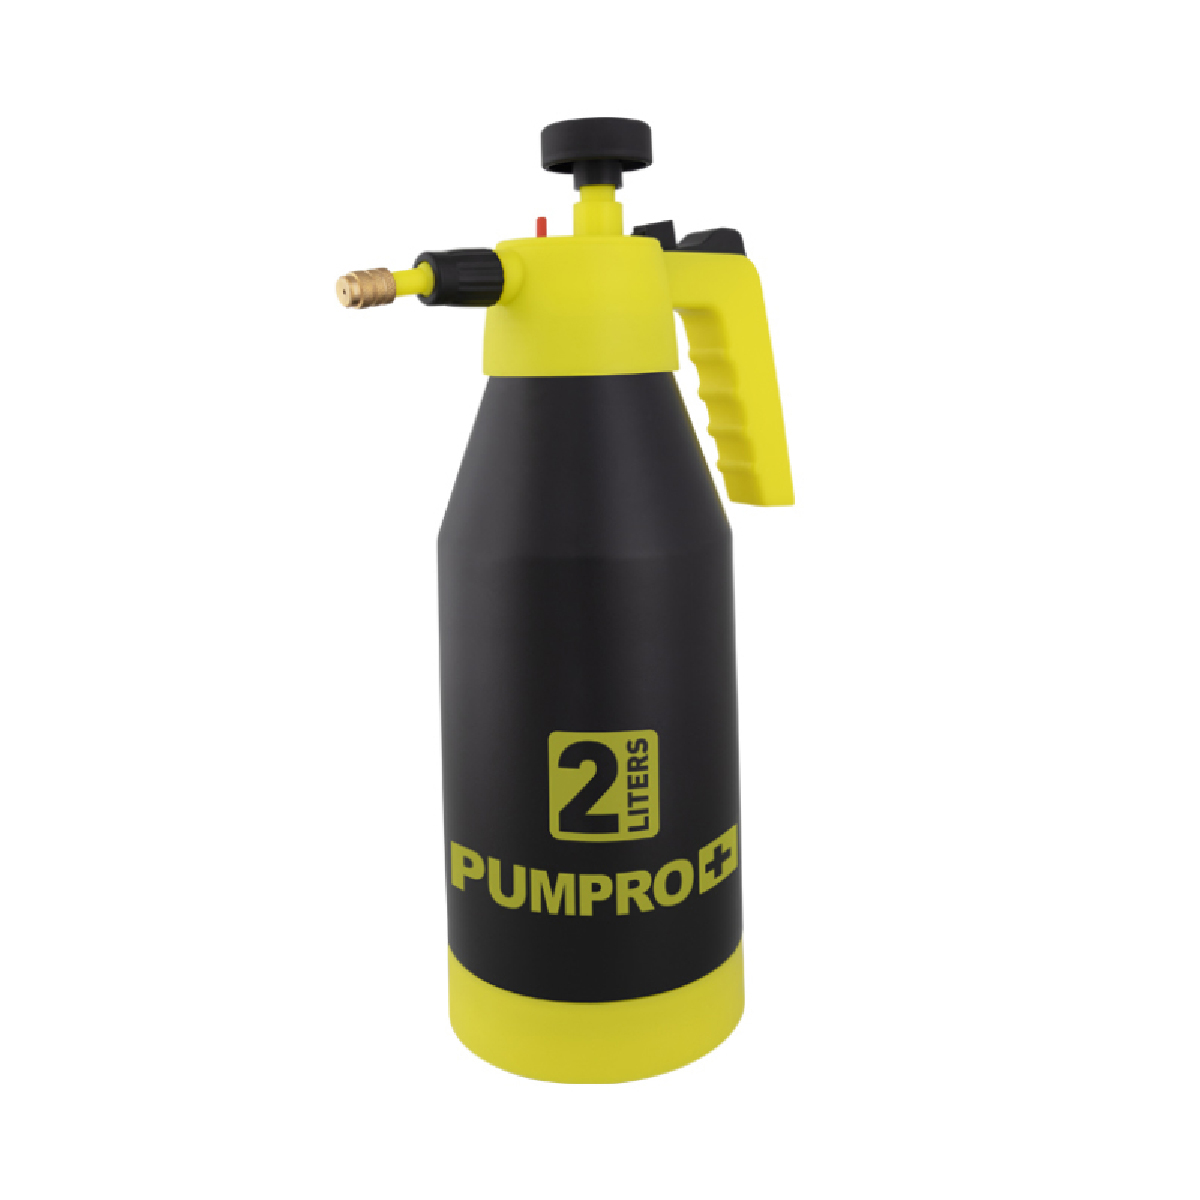 Бутылка с распылителем Pumpro 2л, фото 1